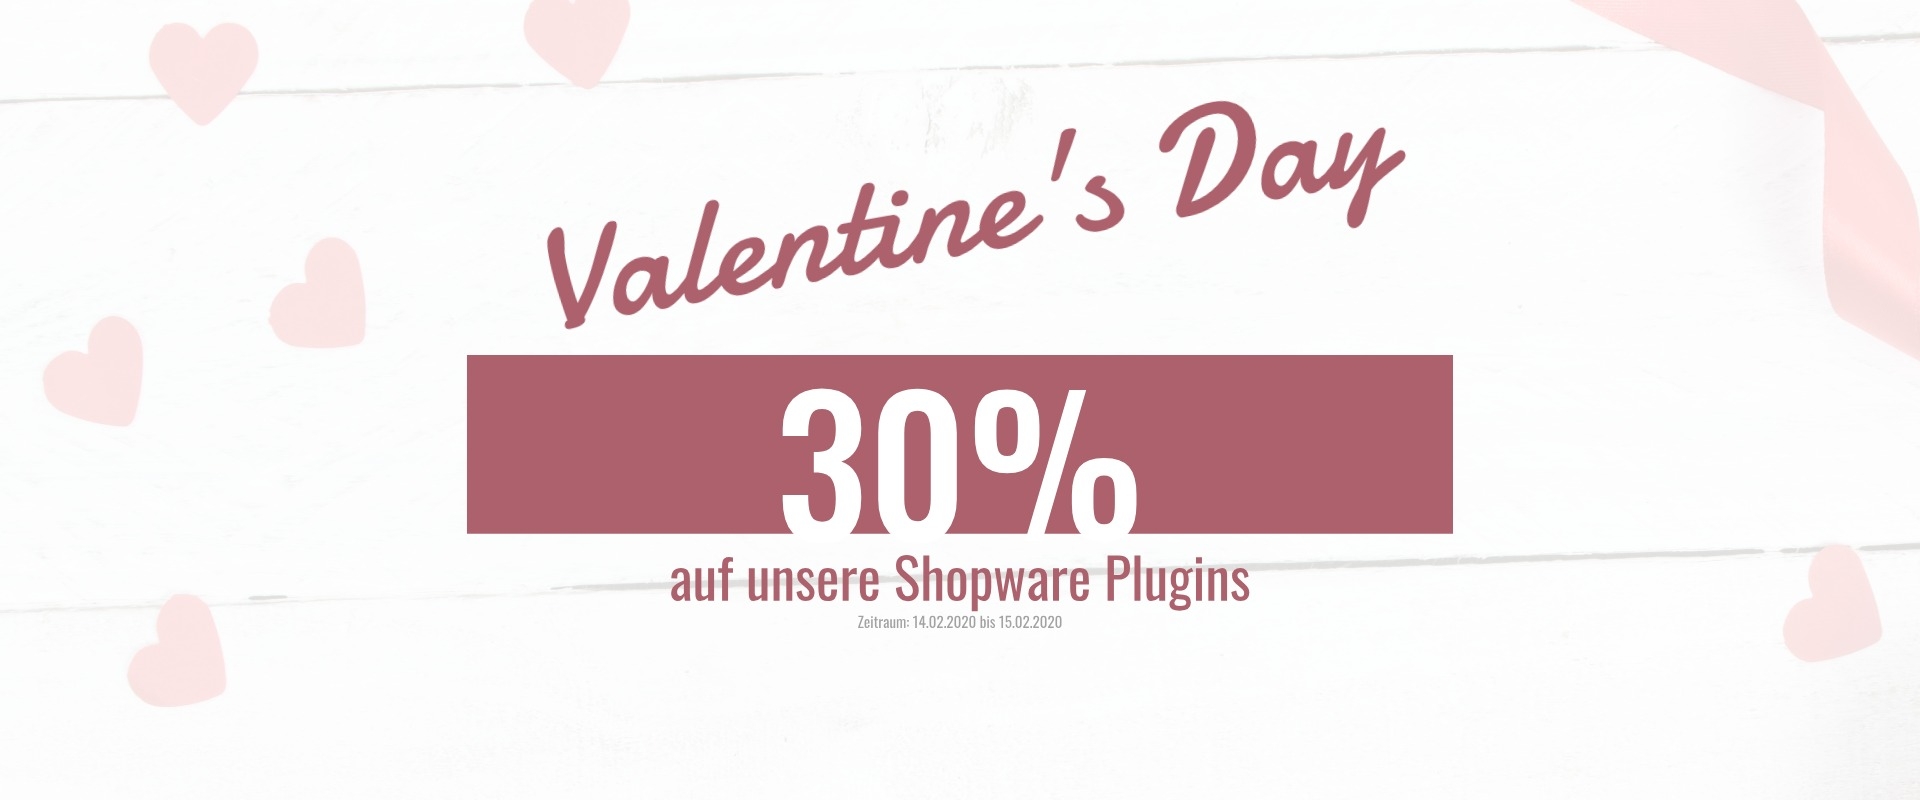 Shopware Valentine's Day Sale - 30% auf unsere Plugins